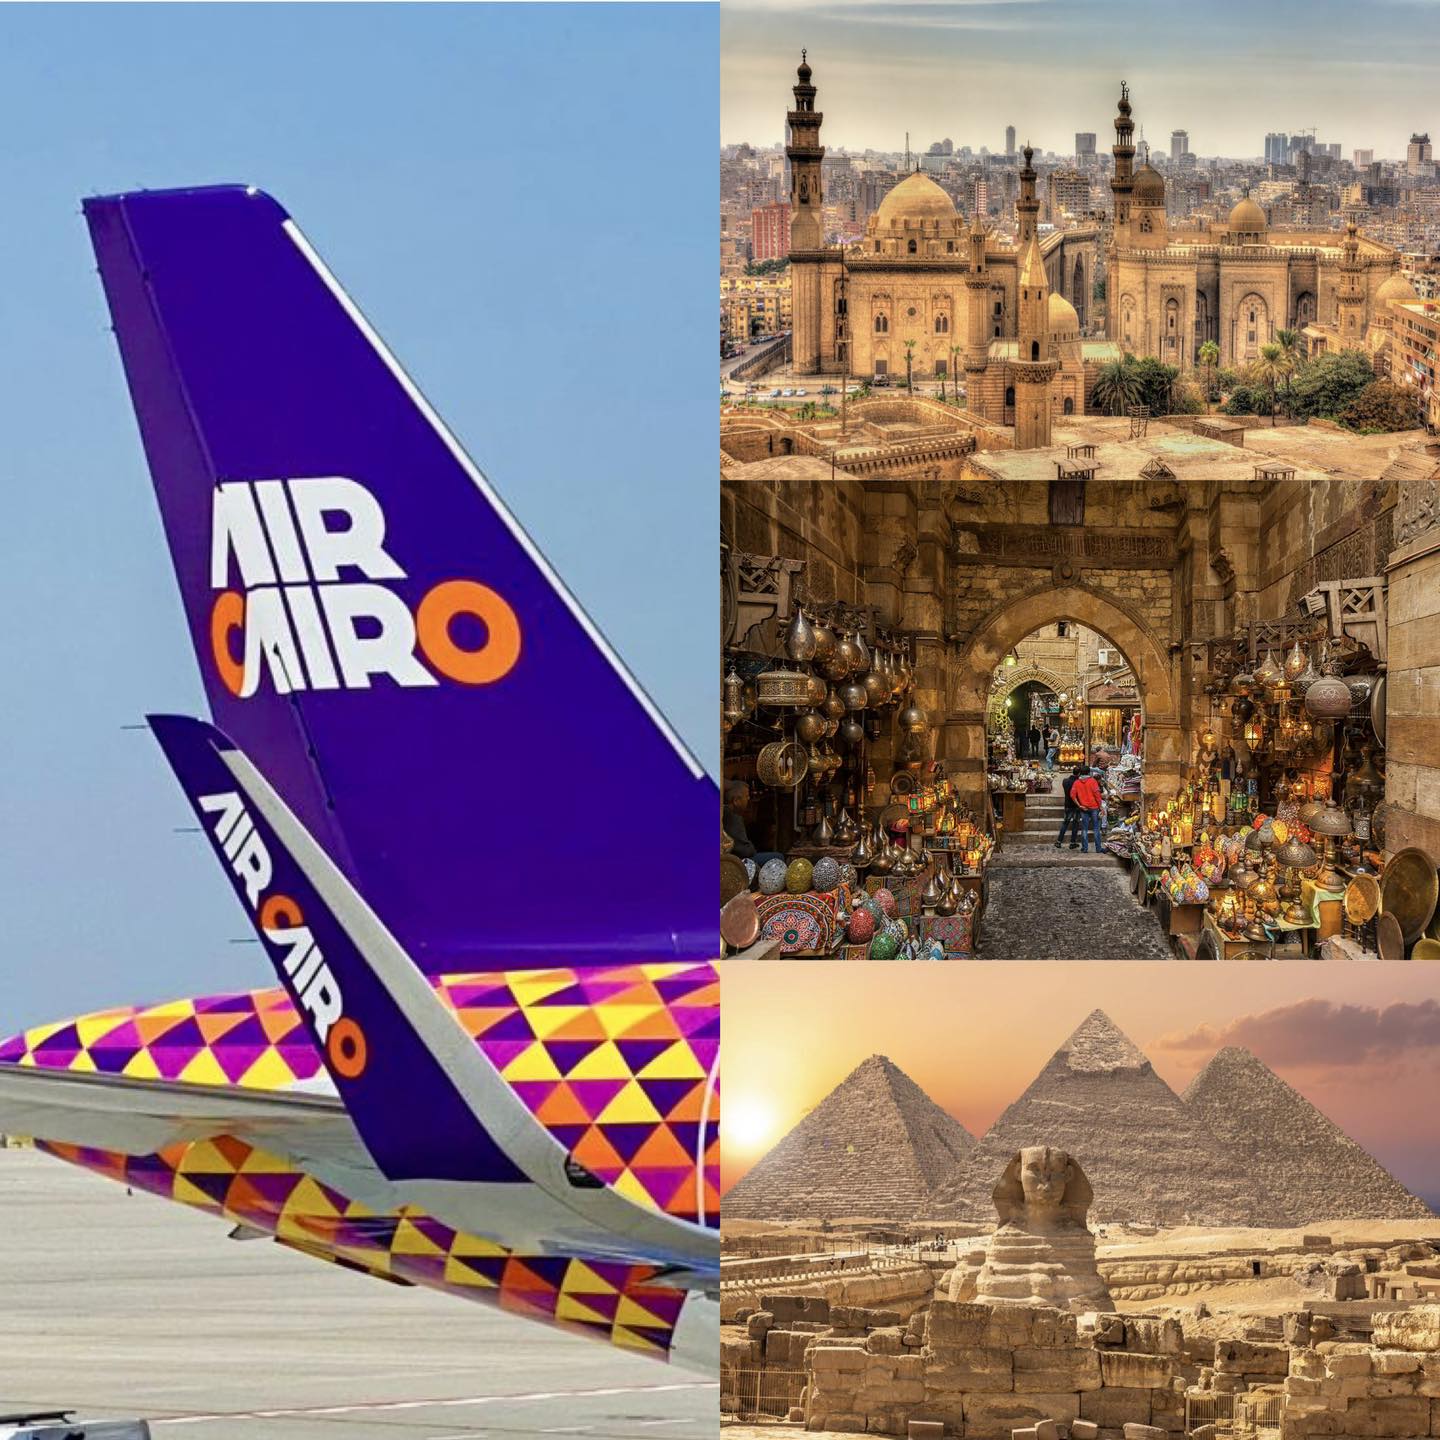 Каир станет ближе: начато выполнение полетов по направлению в столицу Египта